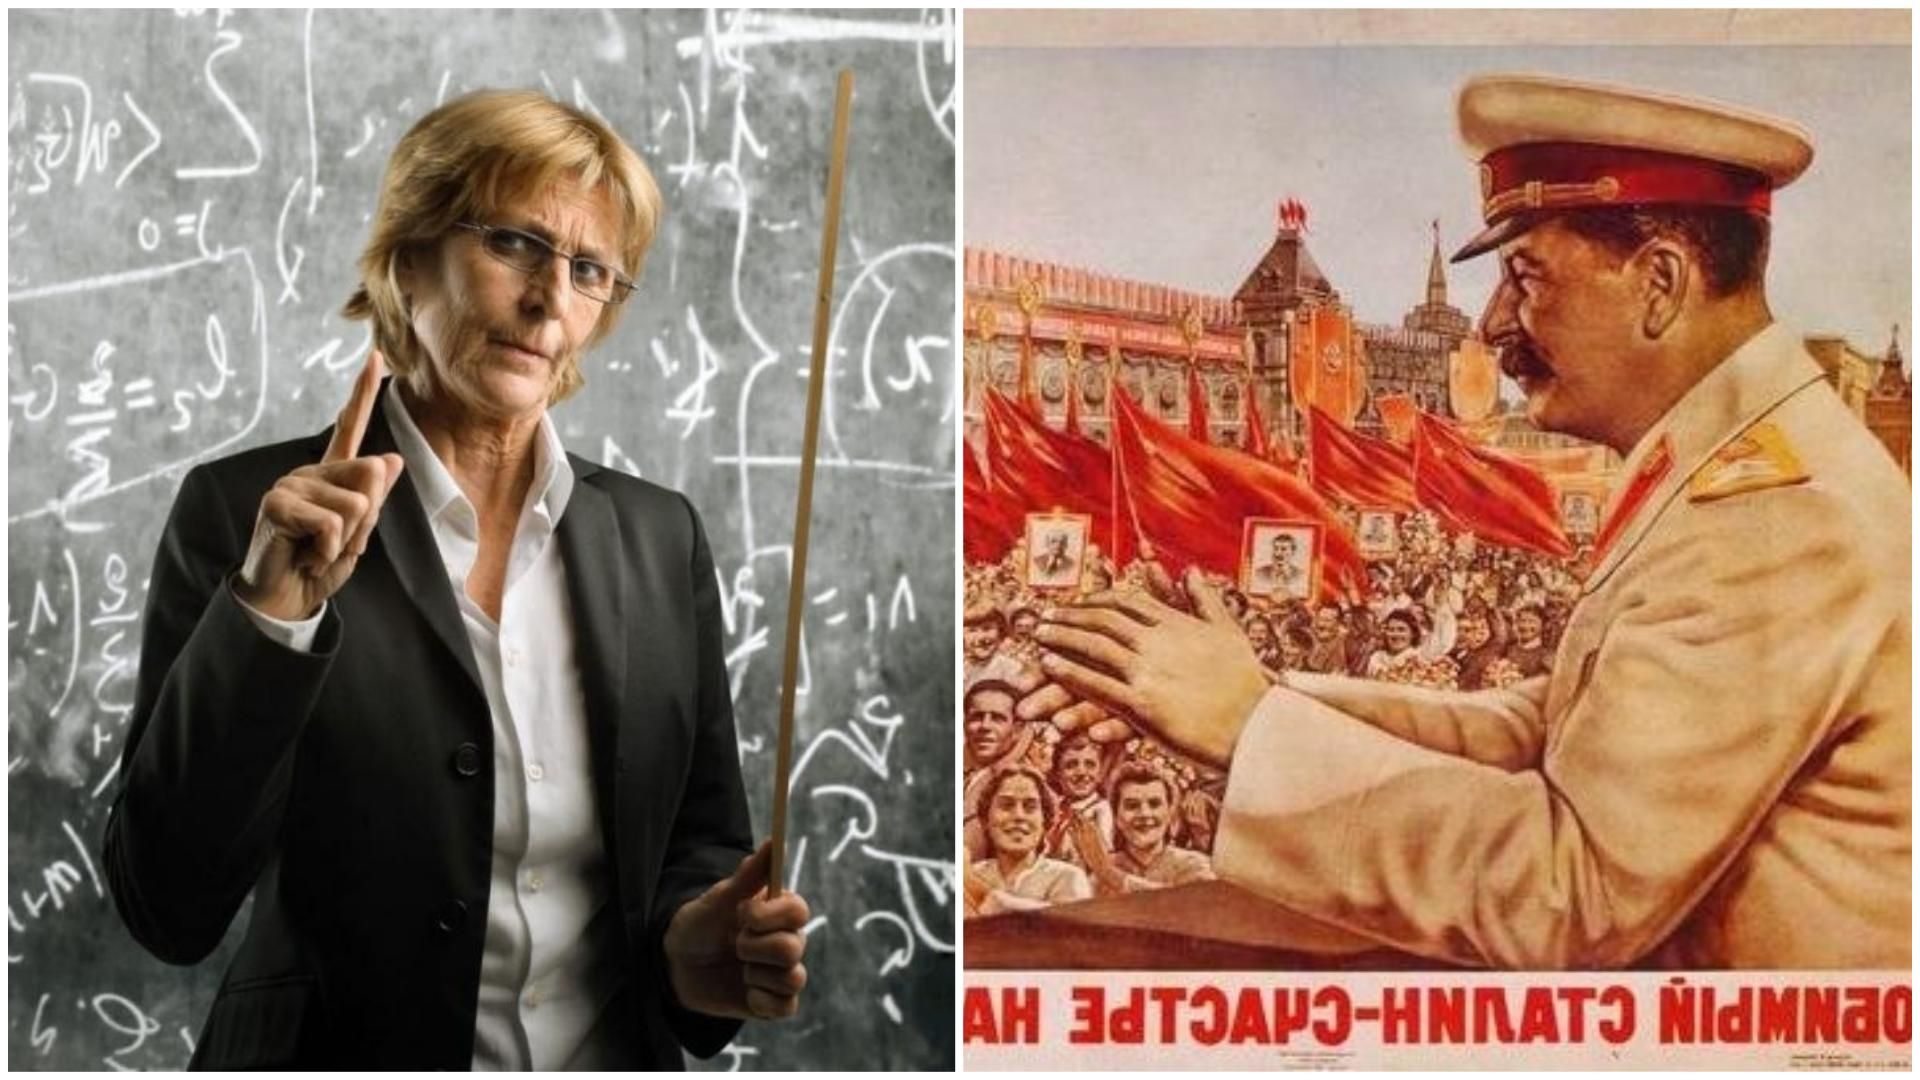 Сталін, вчителька і 1 тиравня в Україні: неймовірне поєднання